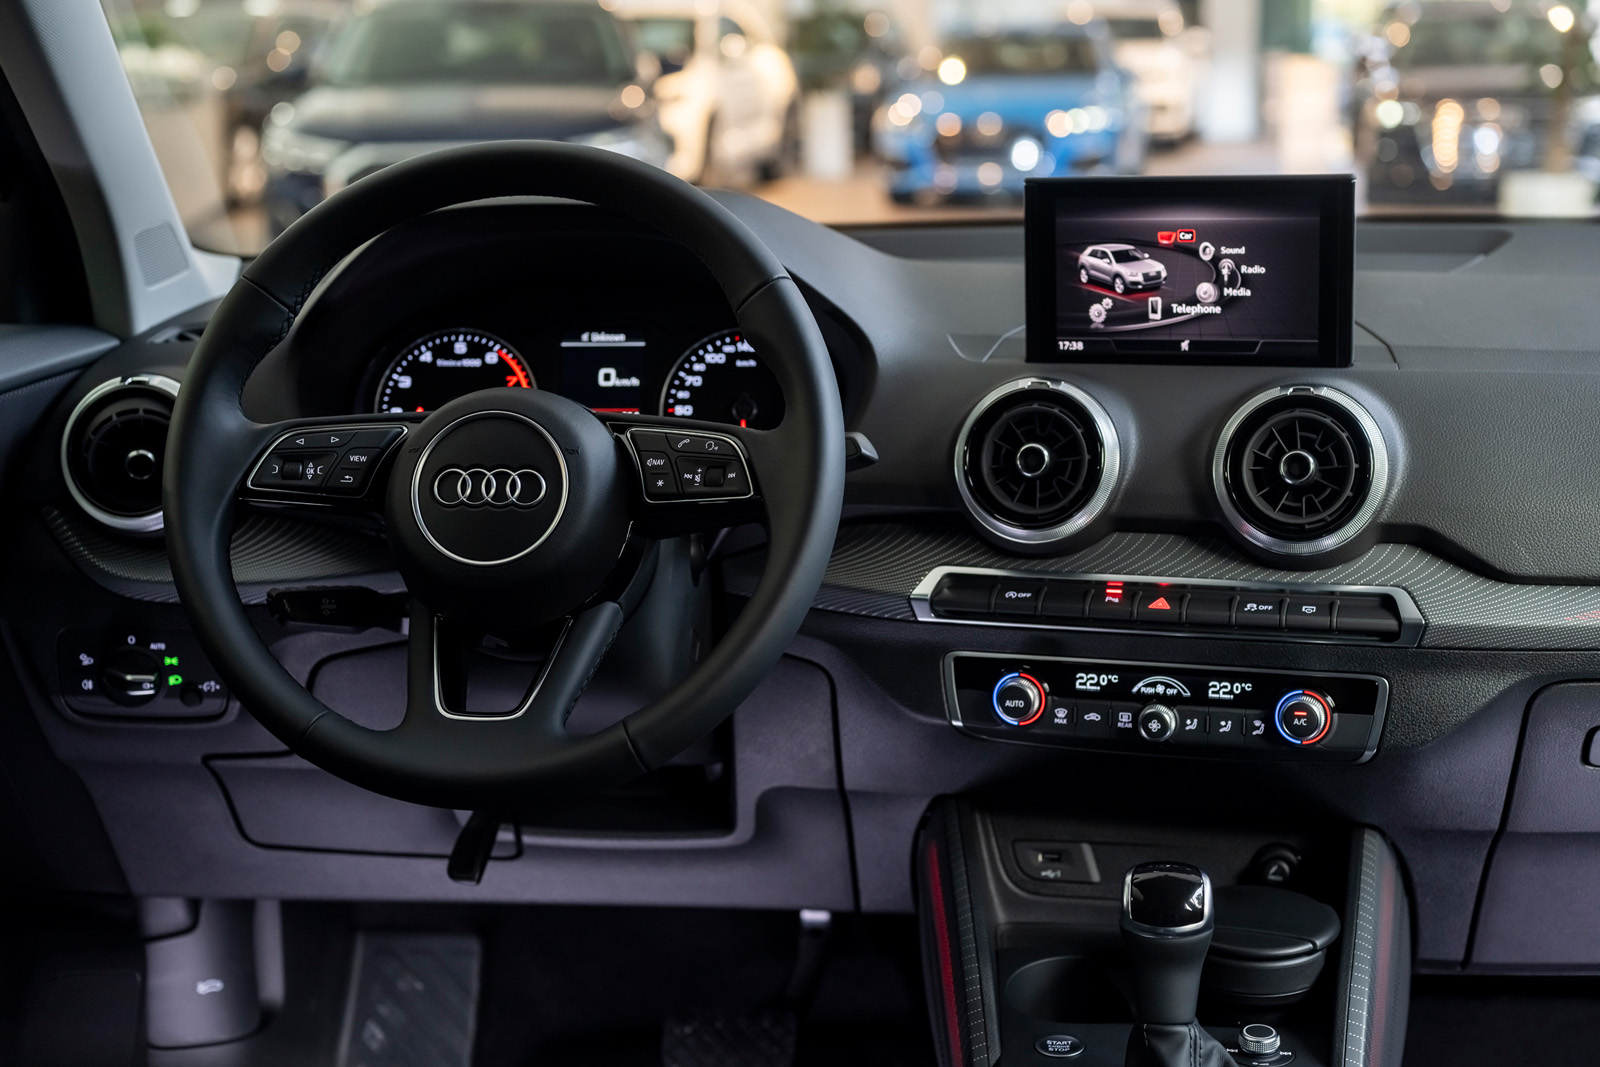 Ra mắt Audi Q2 2021 tại Việt Nam: Giá khoảng 1,7 tỷ, cạnh tranh BMW X1 với giá rẻ hơn nhưng trang bị mới gây chú ý - Ảnh 8.